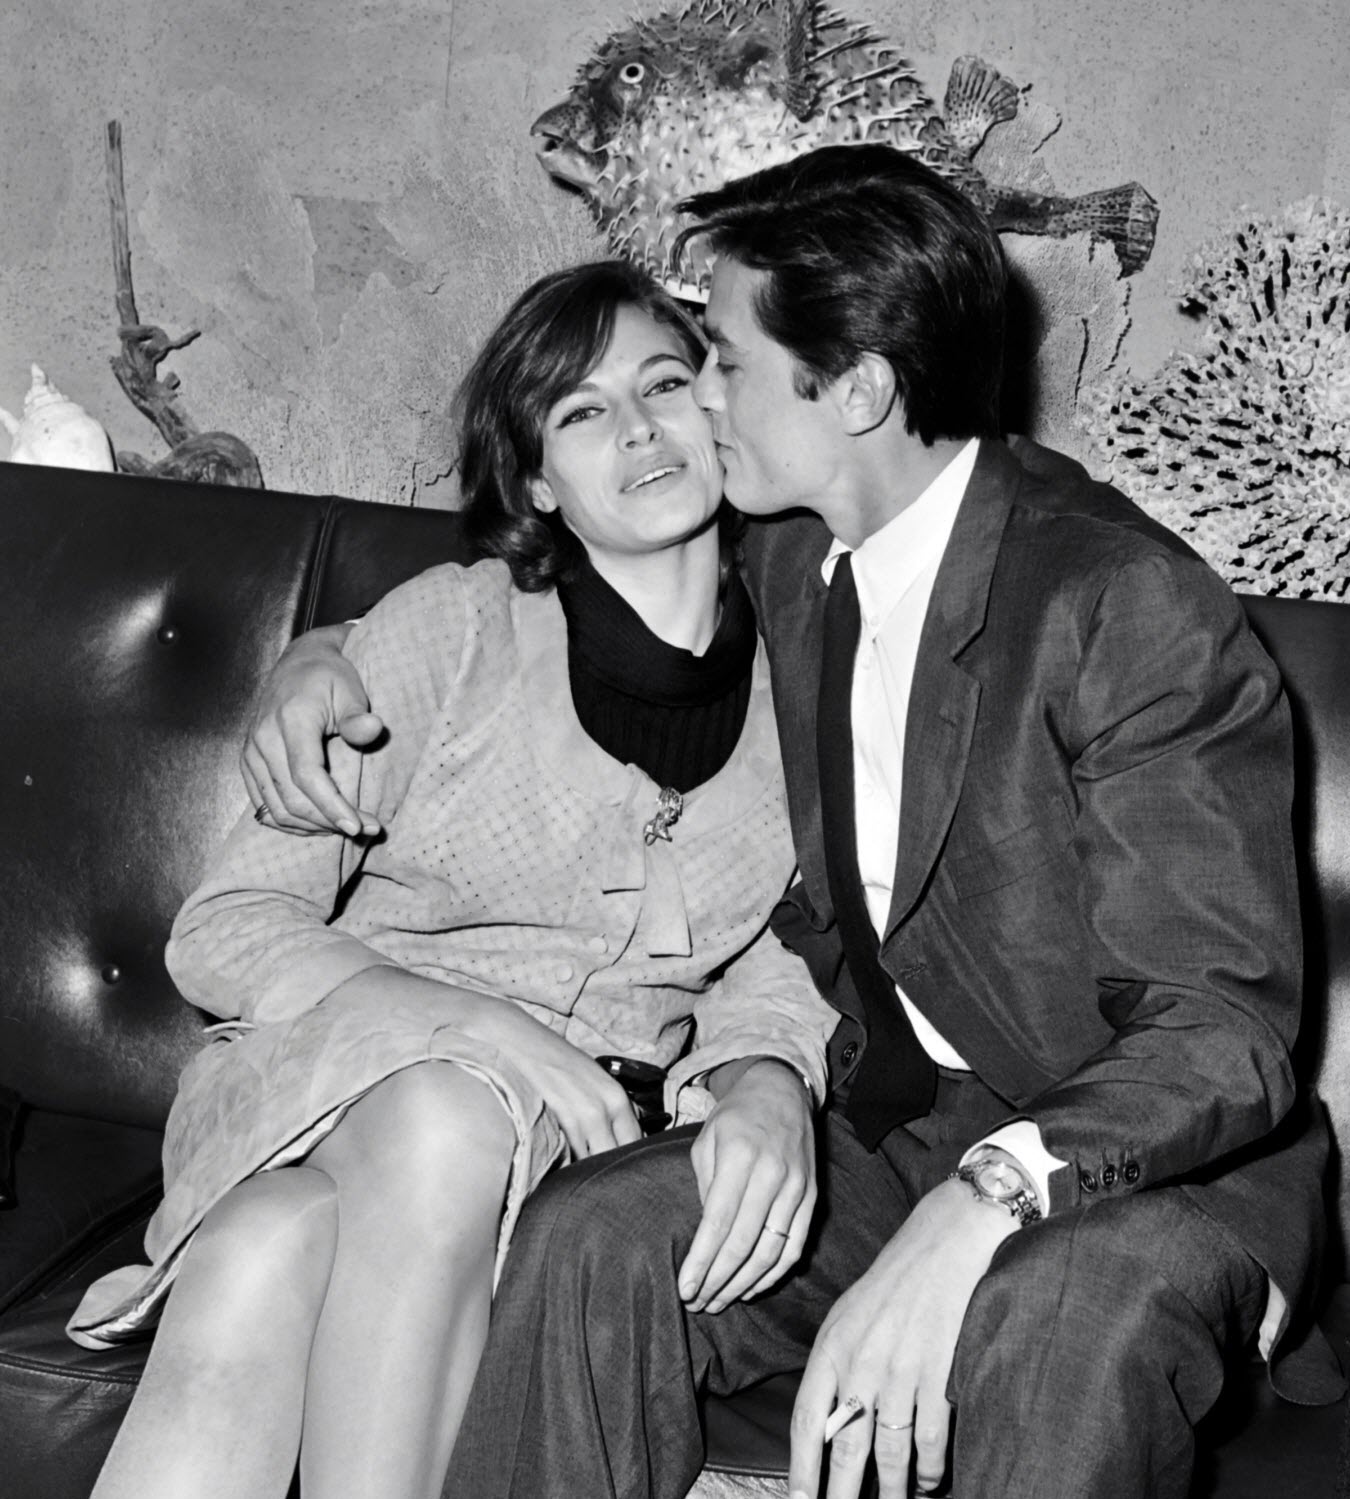 Alain Delon with his wife Natalie Delon